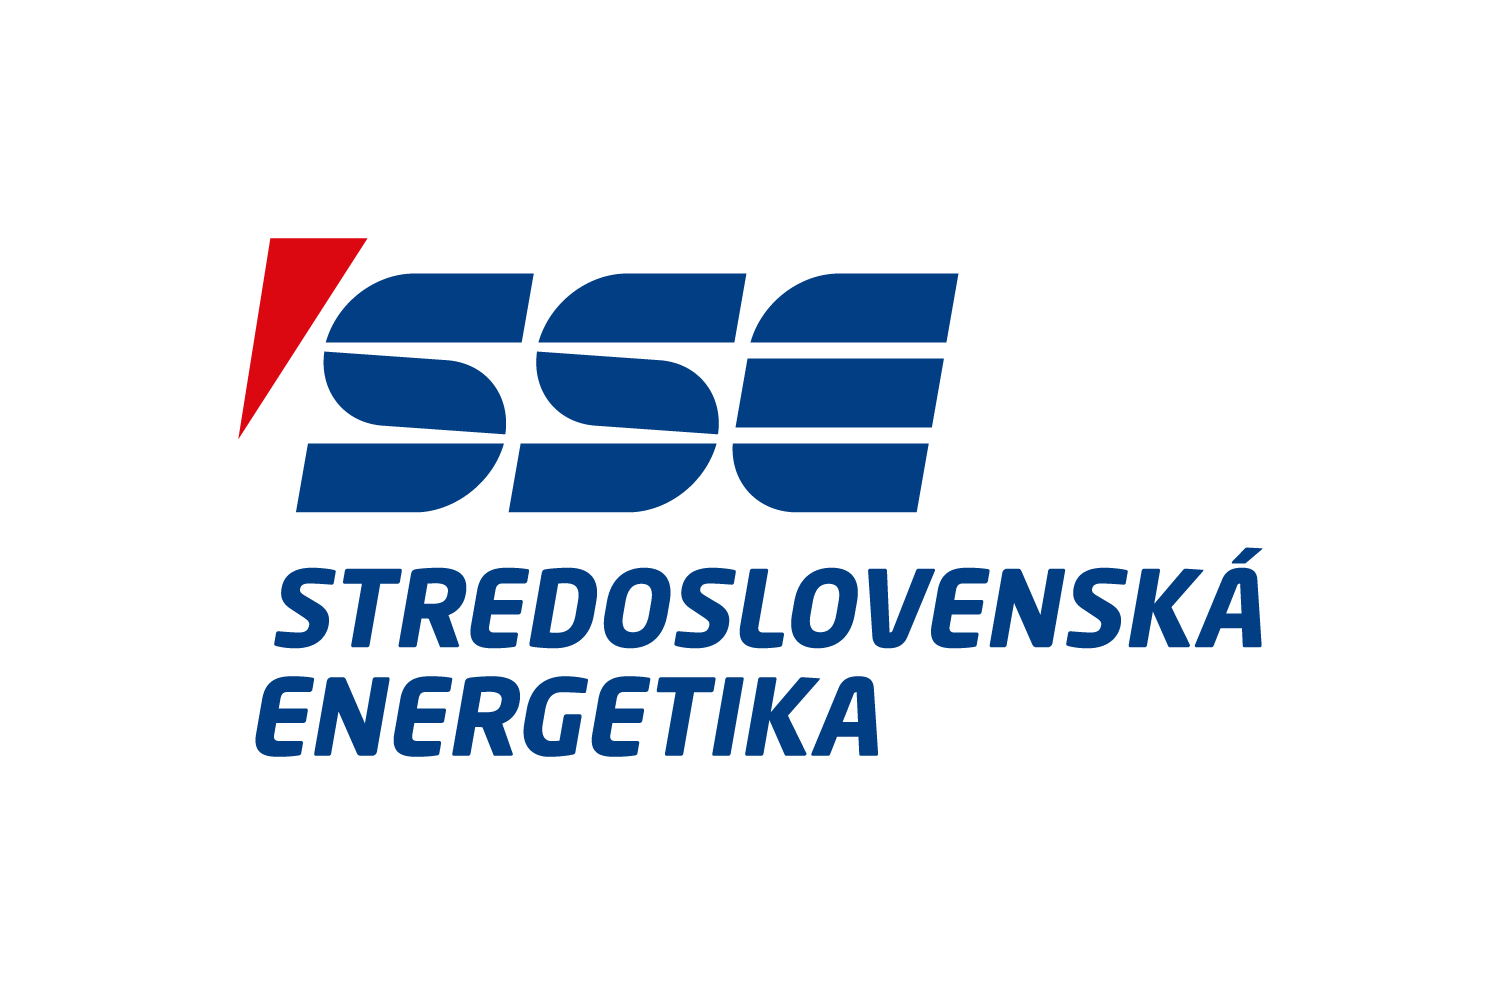 Stredoslovenská energetika logo